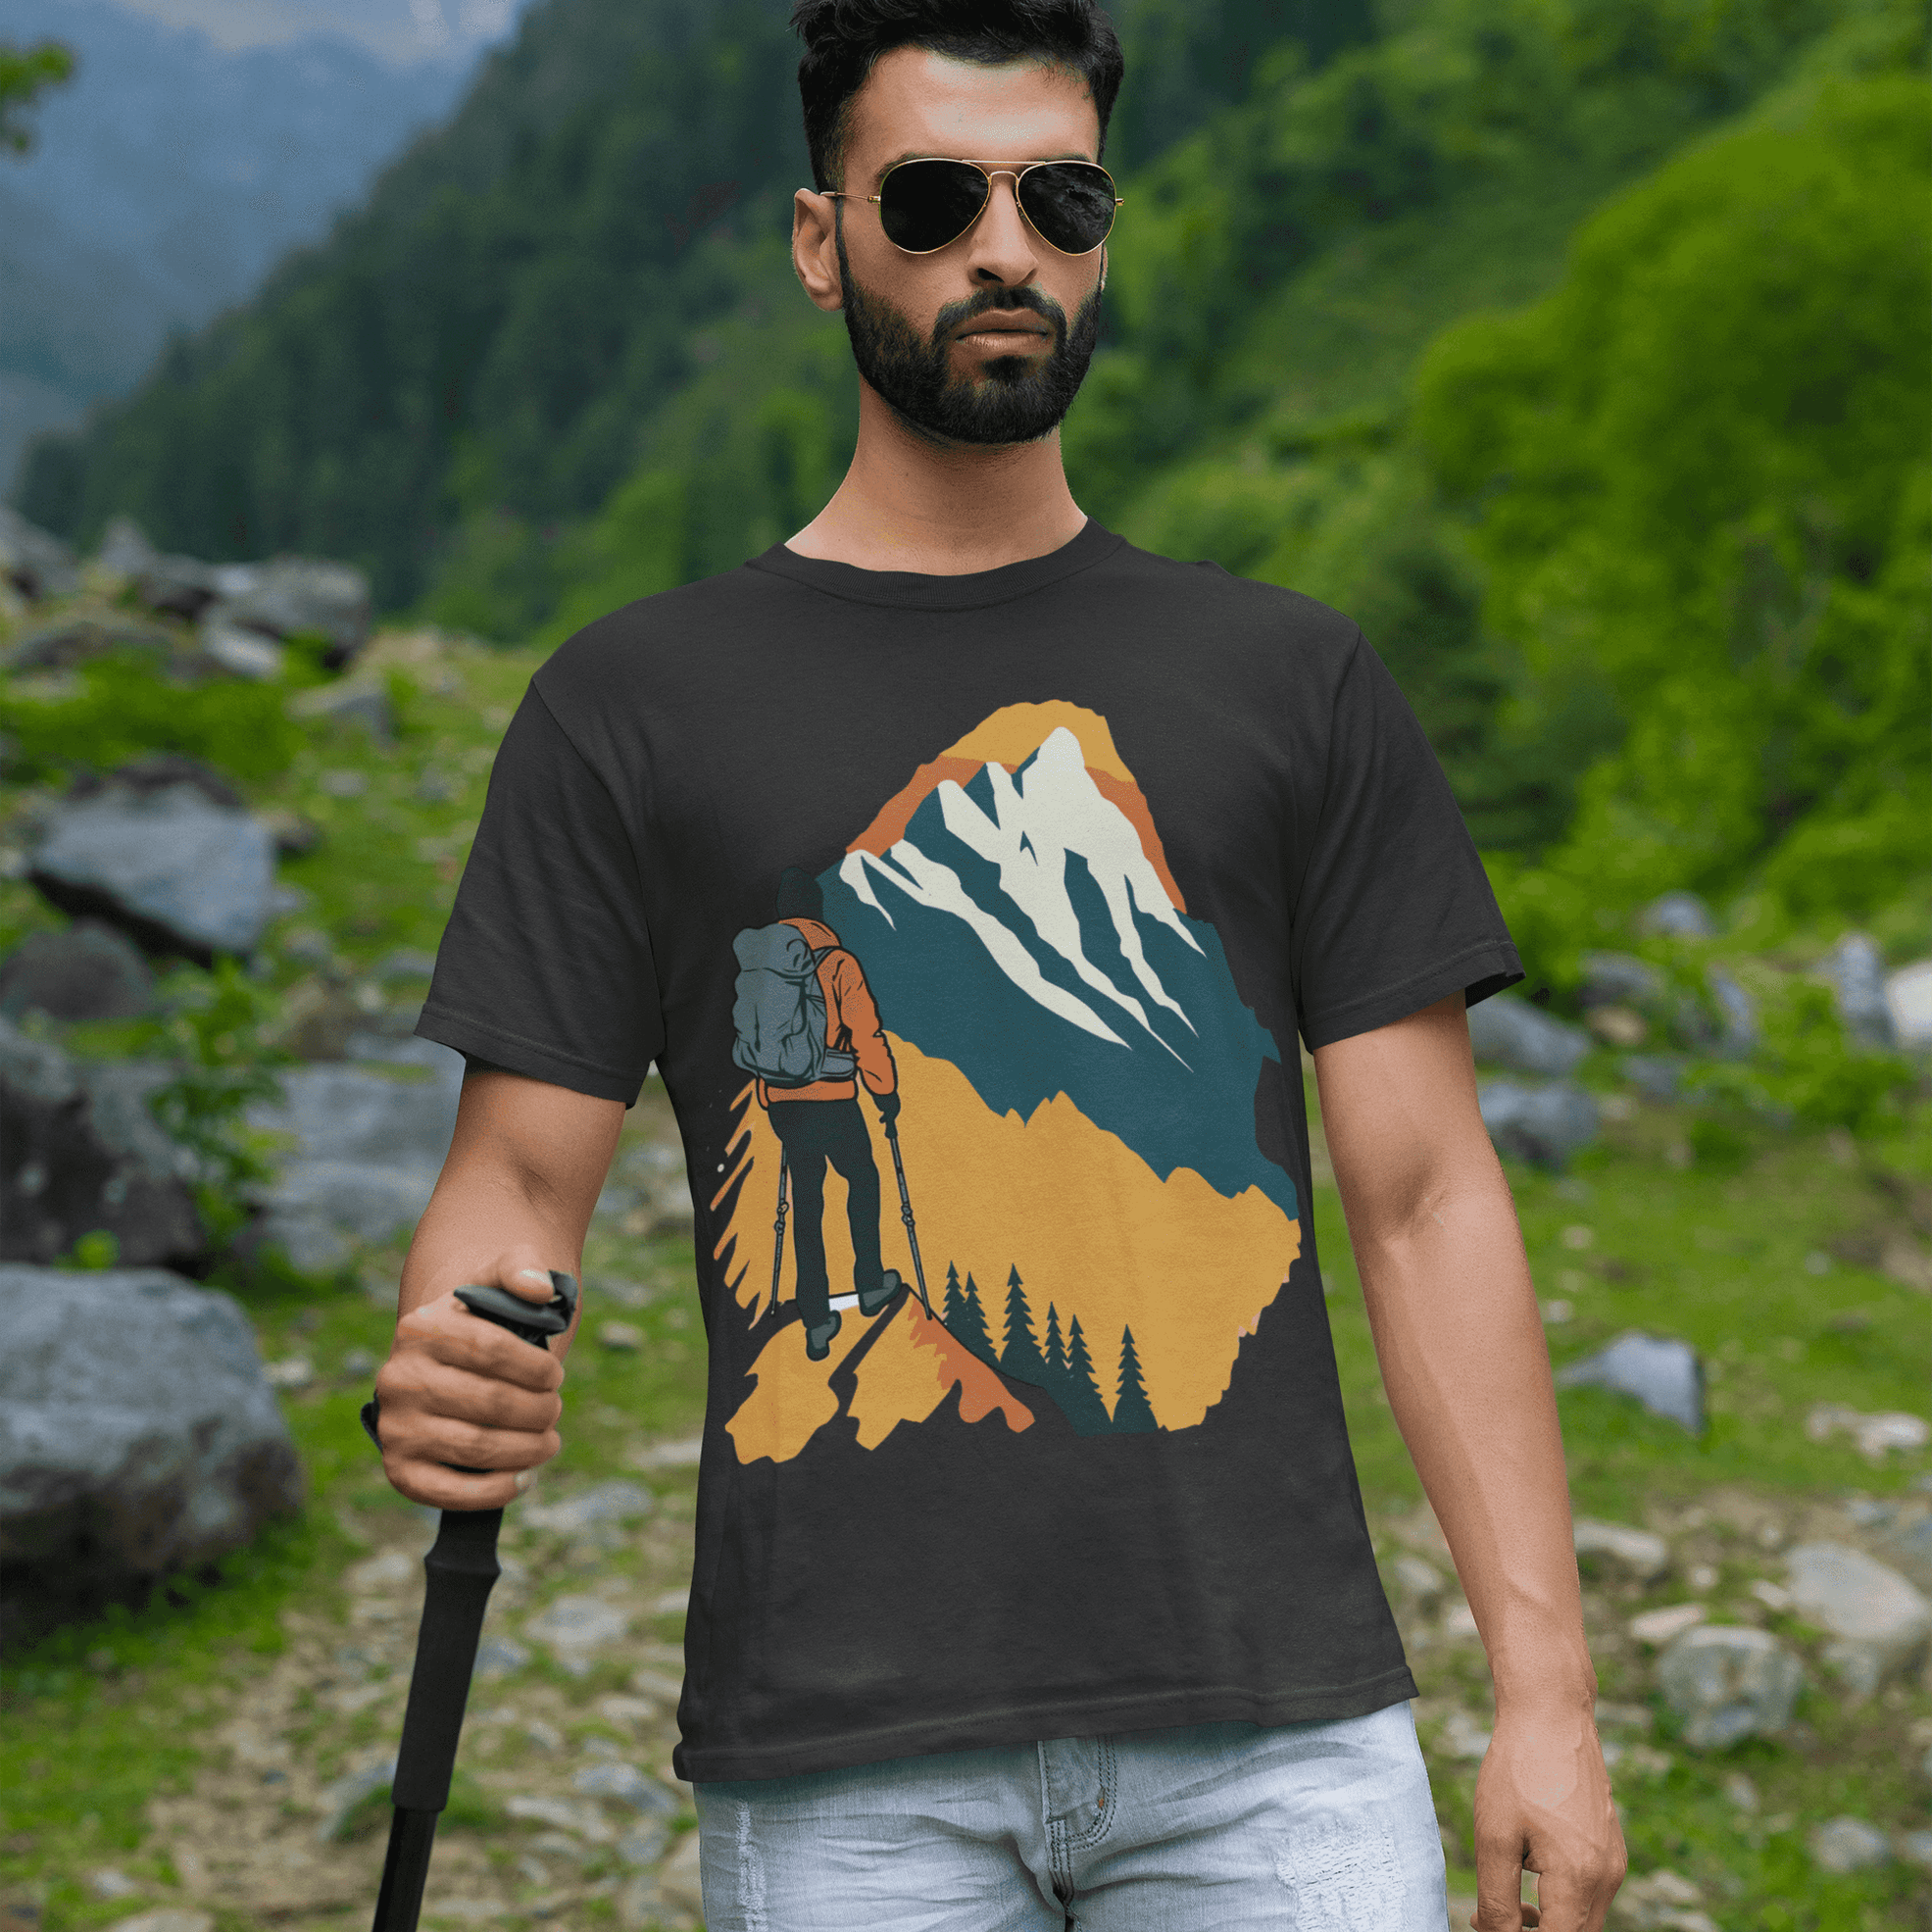 Adventure Awaits Men's Hiking/Trekking Graphic T-Shirt - Explore in Style